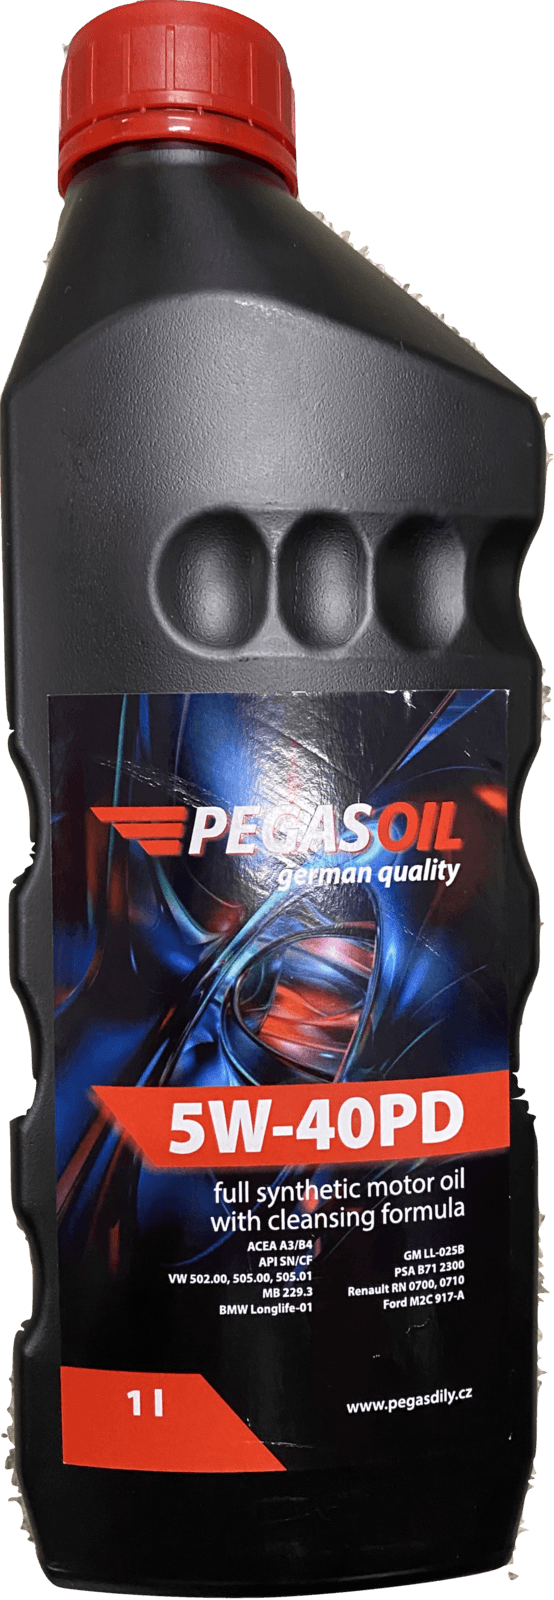 Motorový olej 5W-40PD Pegas oil - 1L